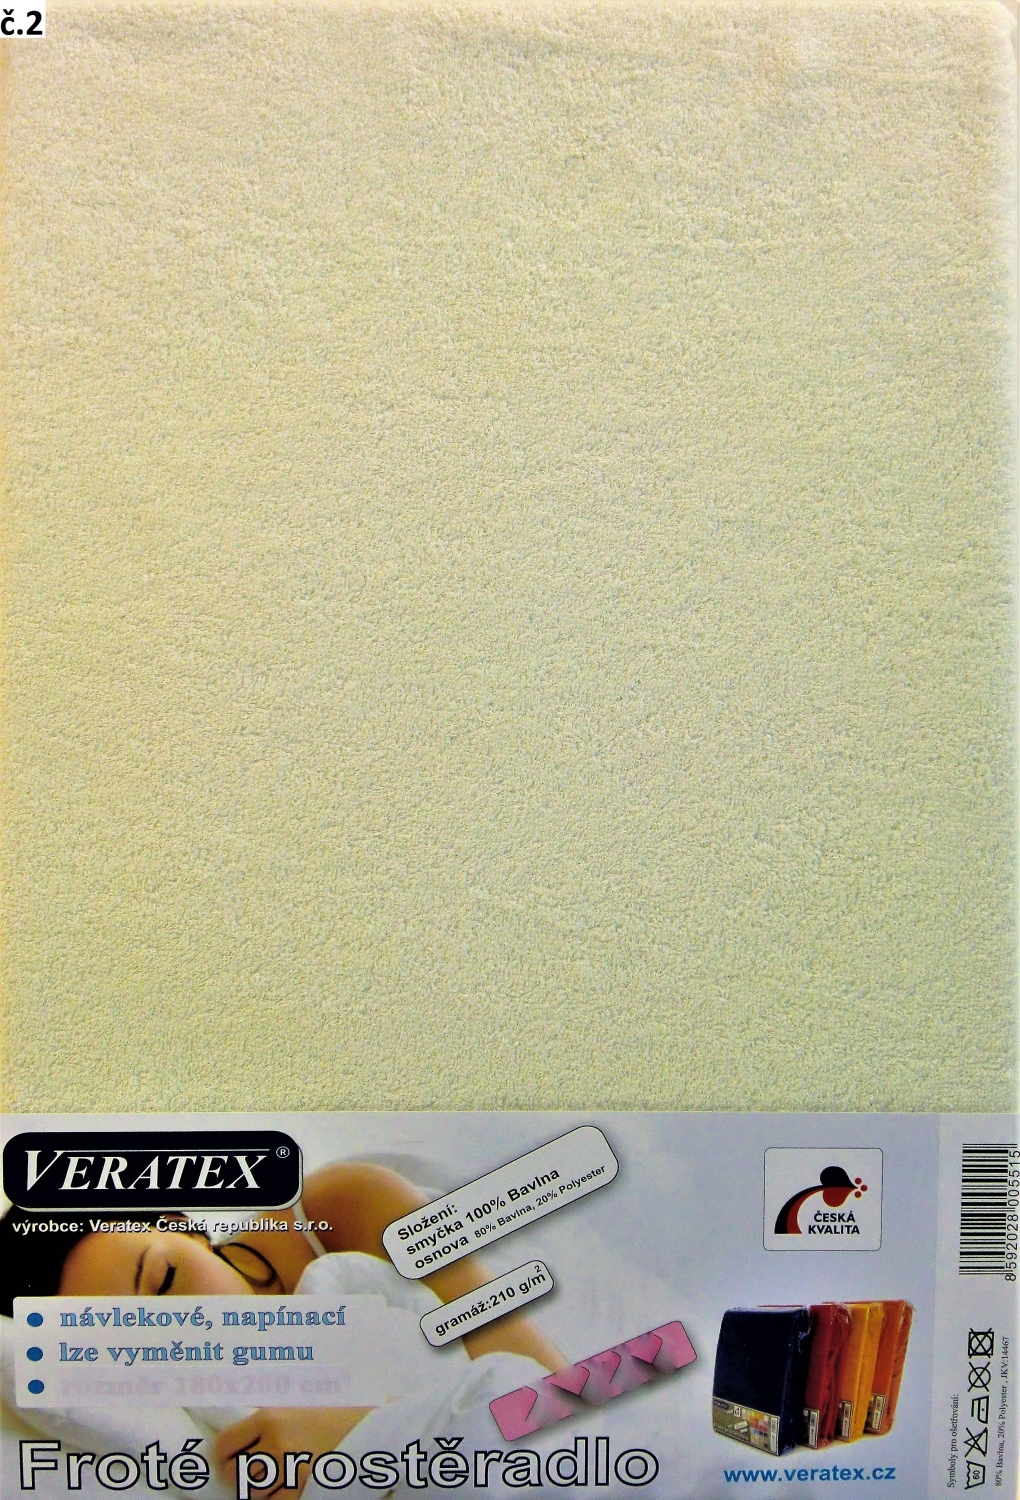 Veratex Froté prostěradlo postýlka 60 x 120 cm (č. 2-smetanová)